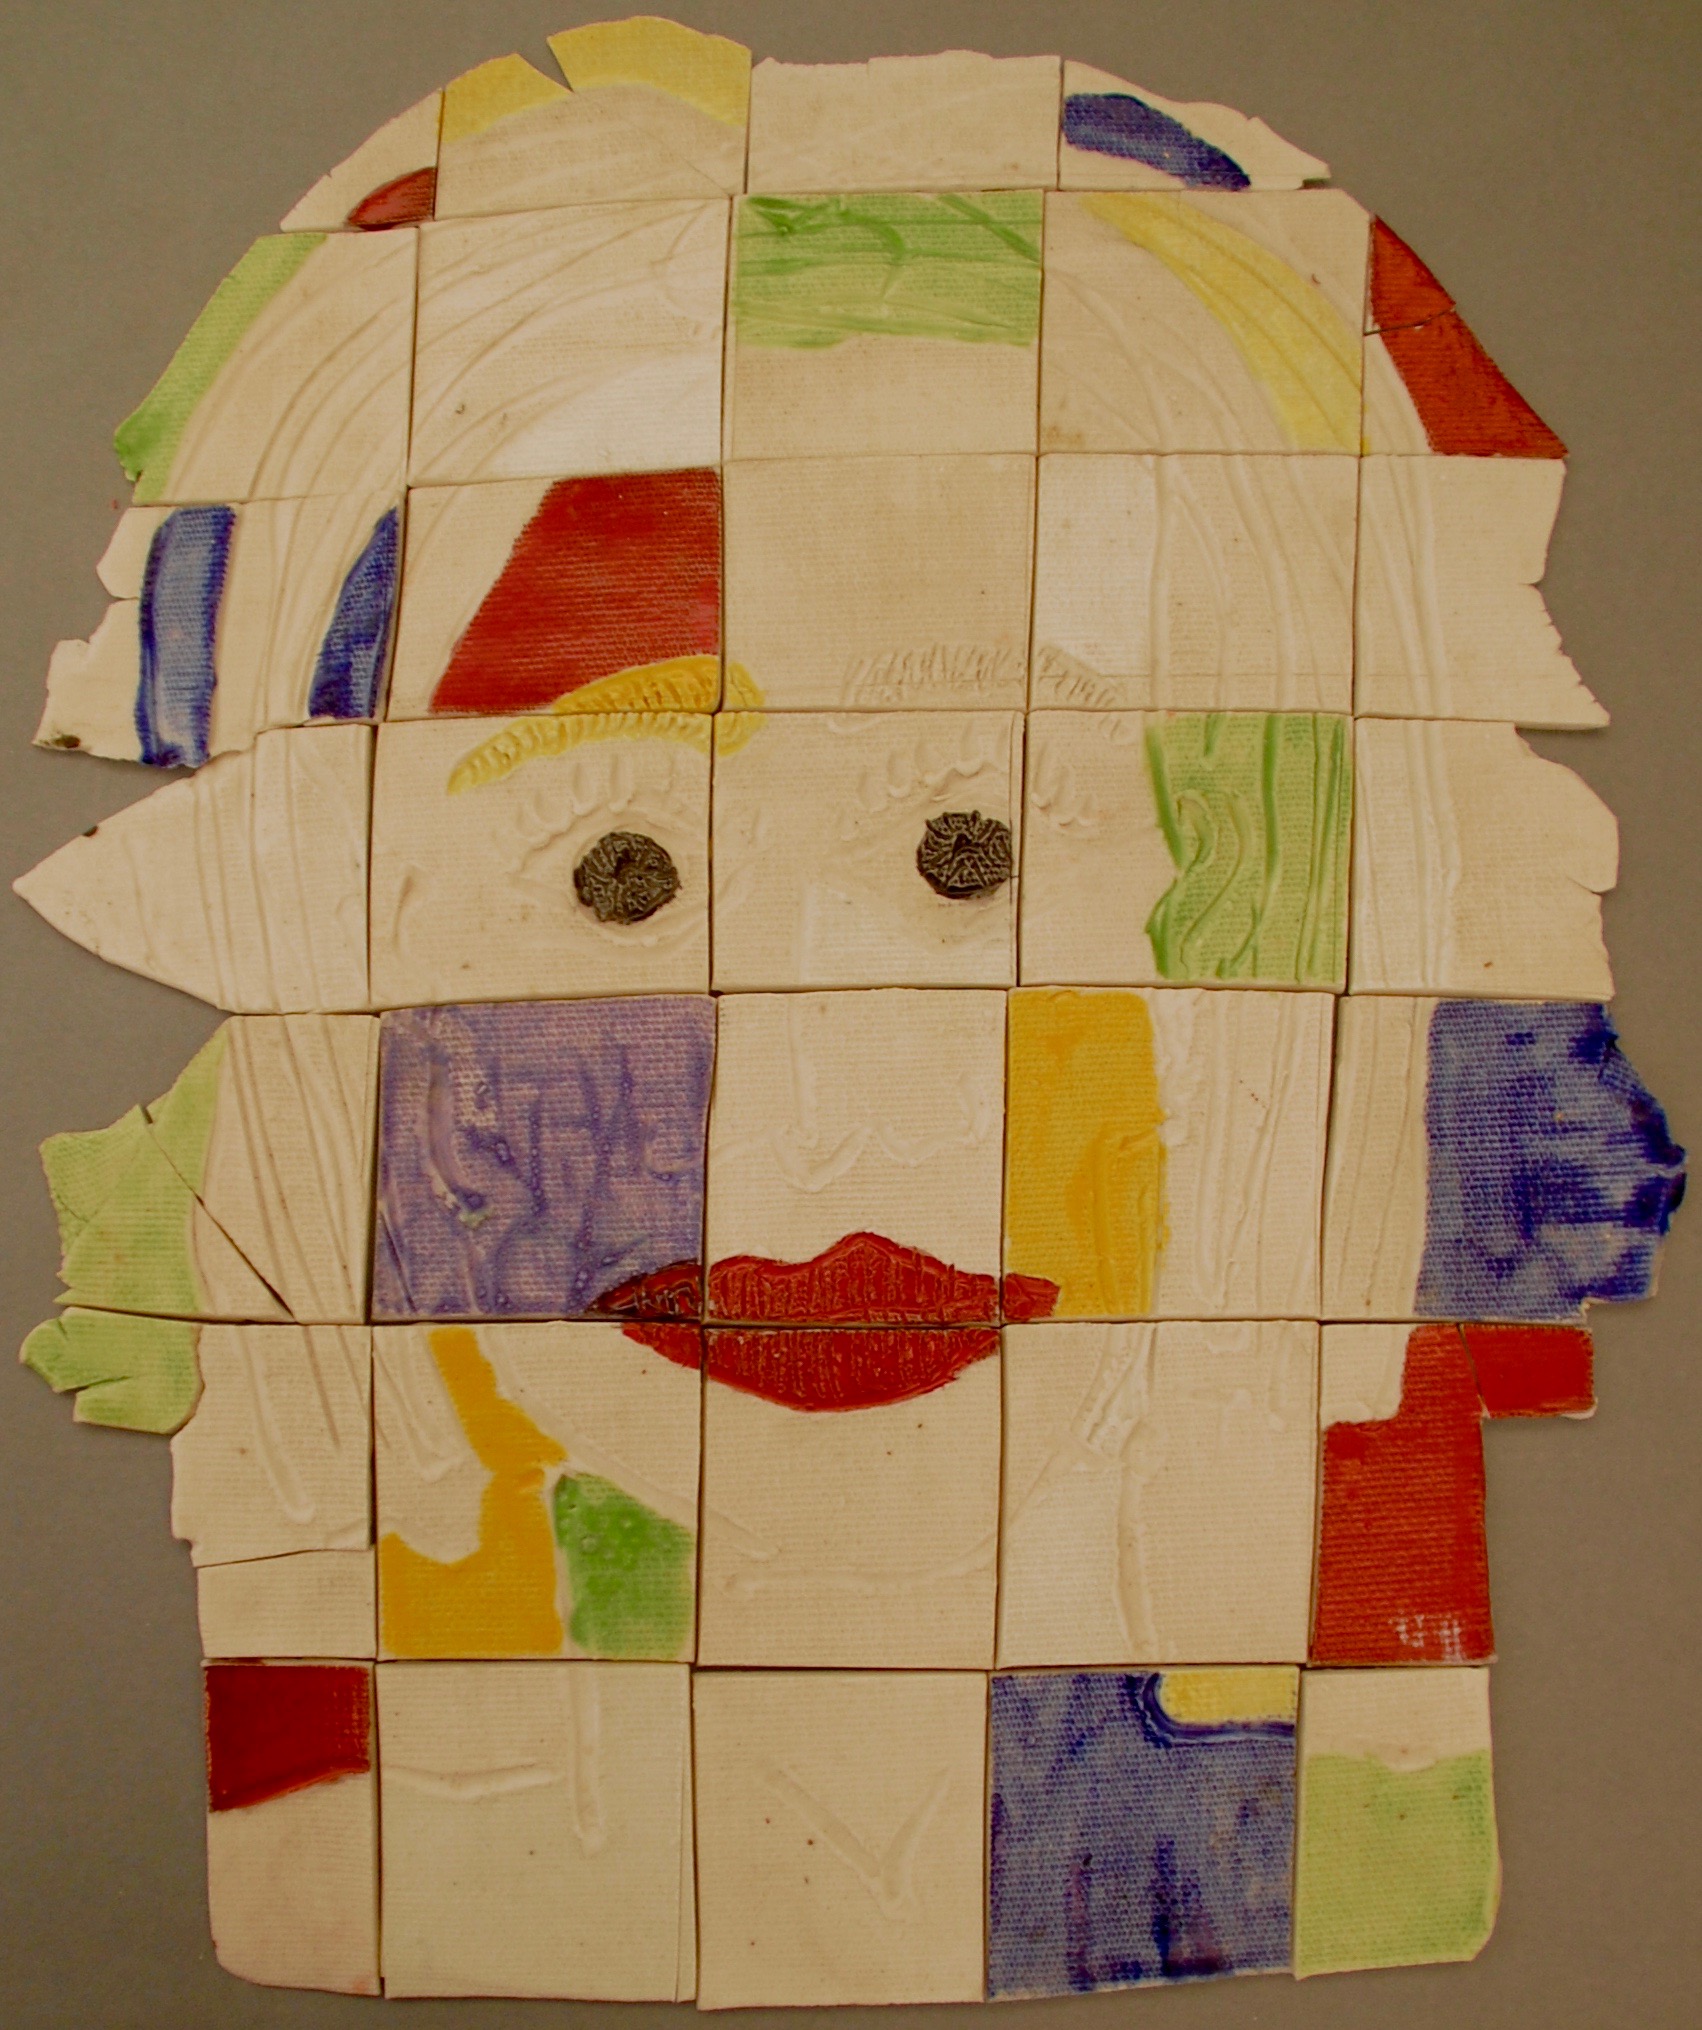 Head of a woman porcelain puzzle, 1999